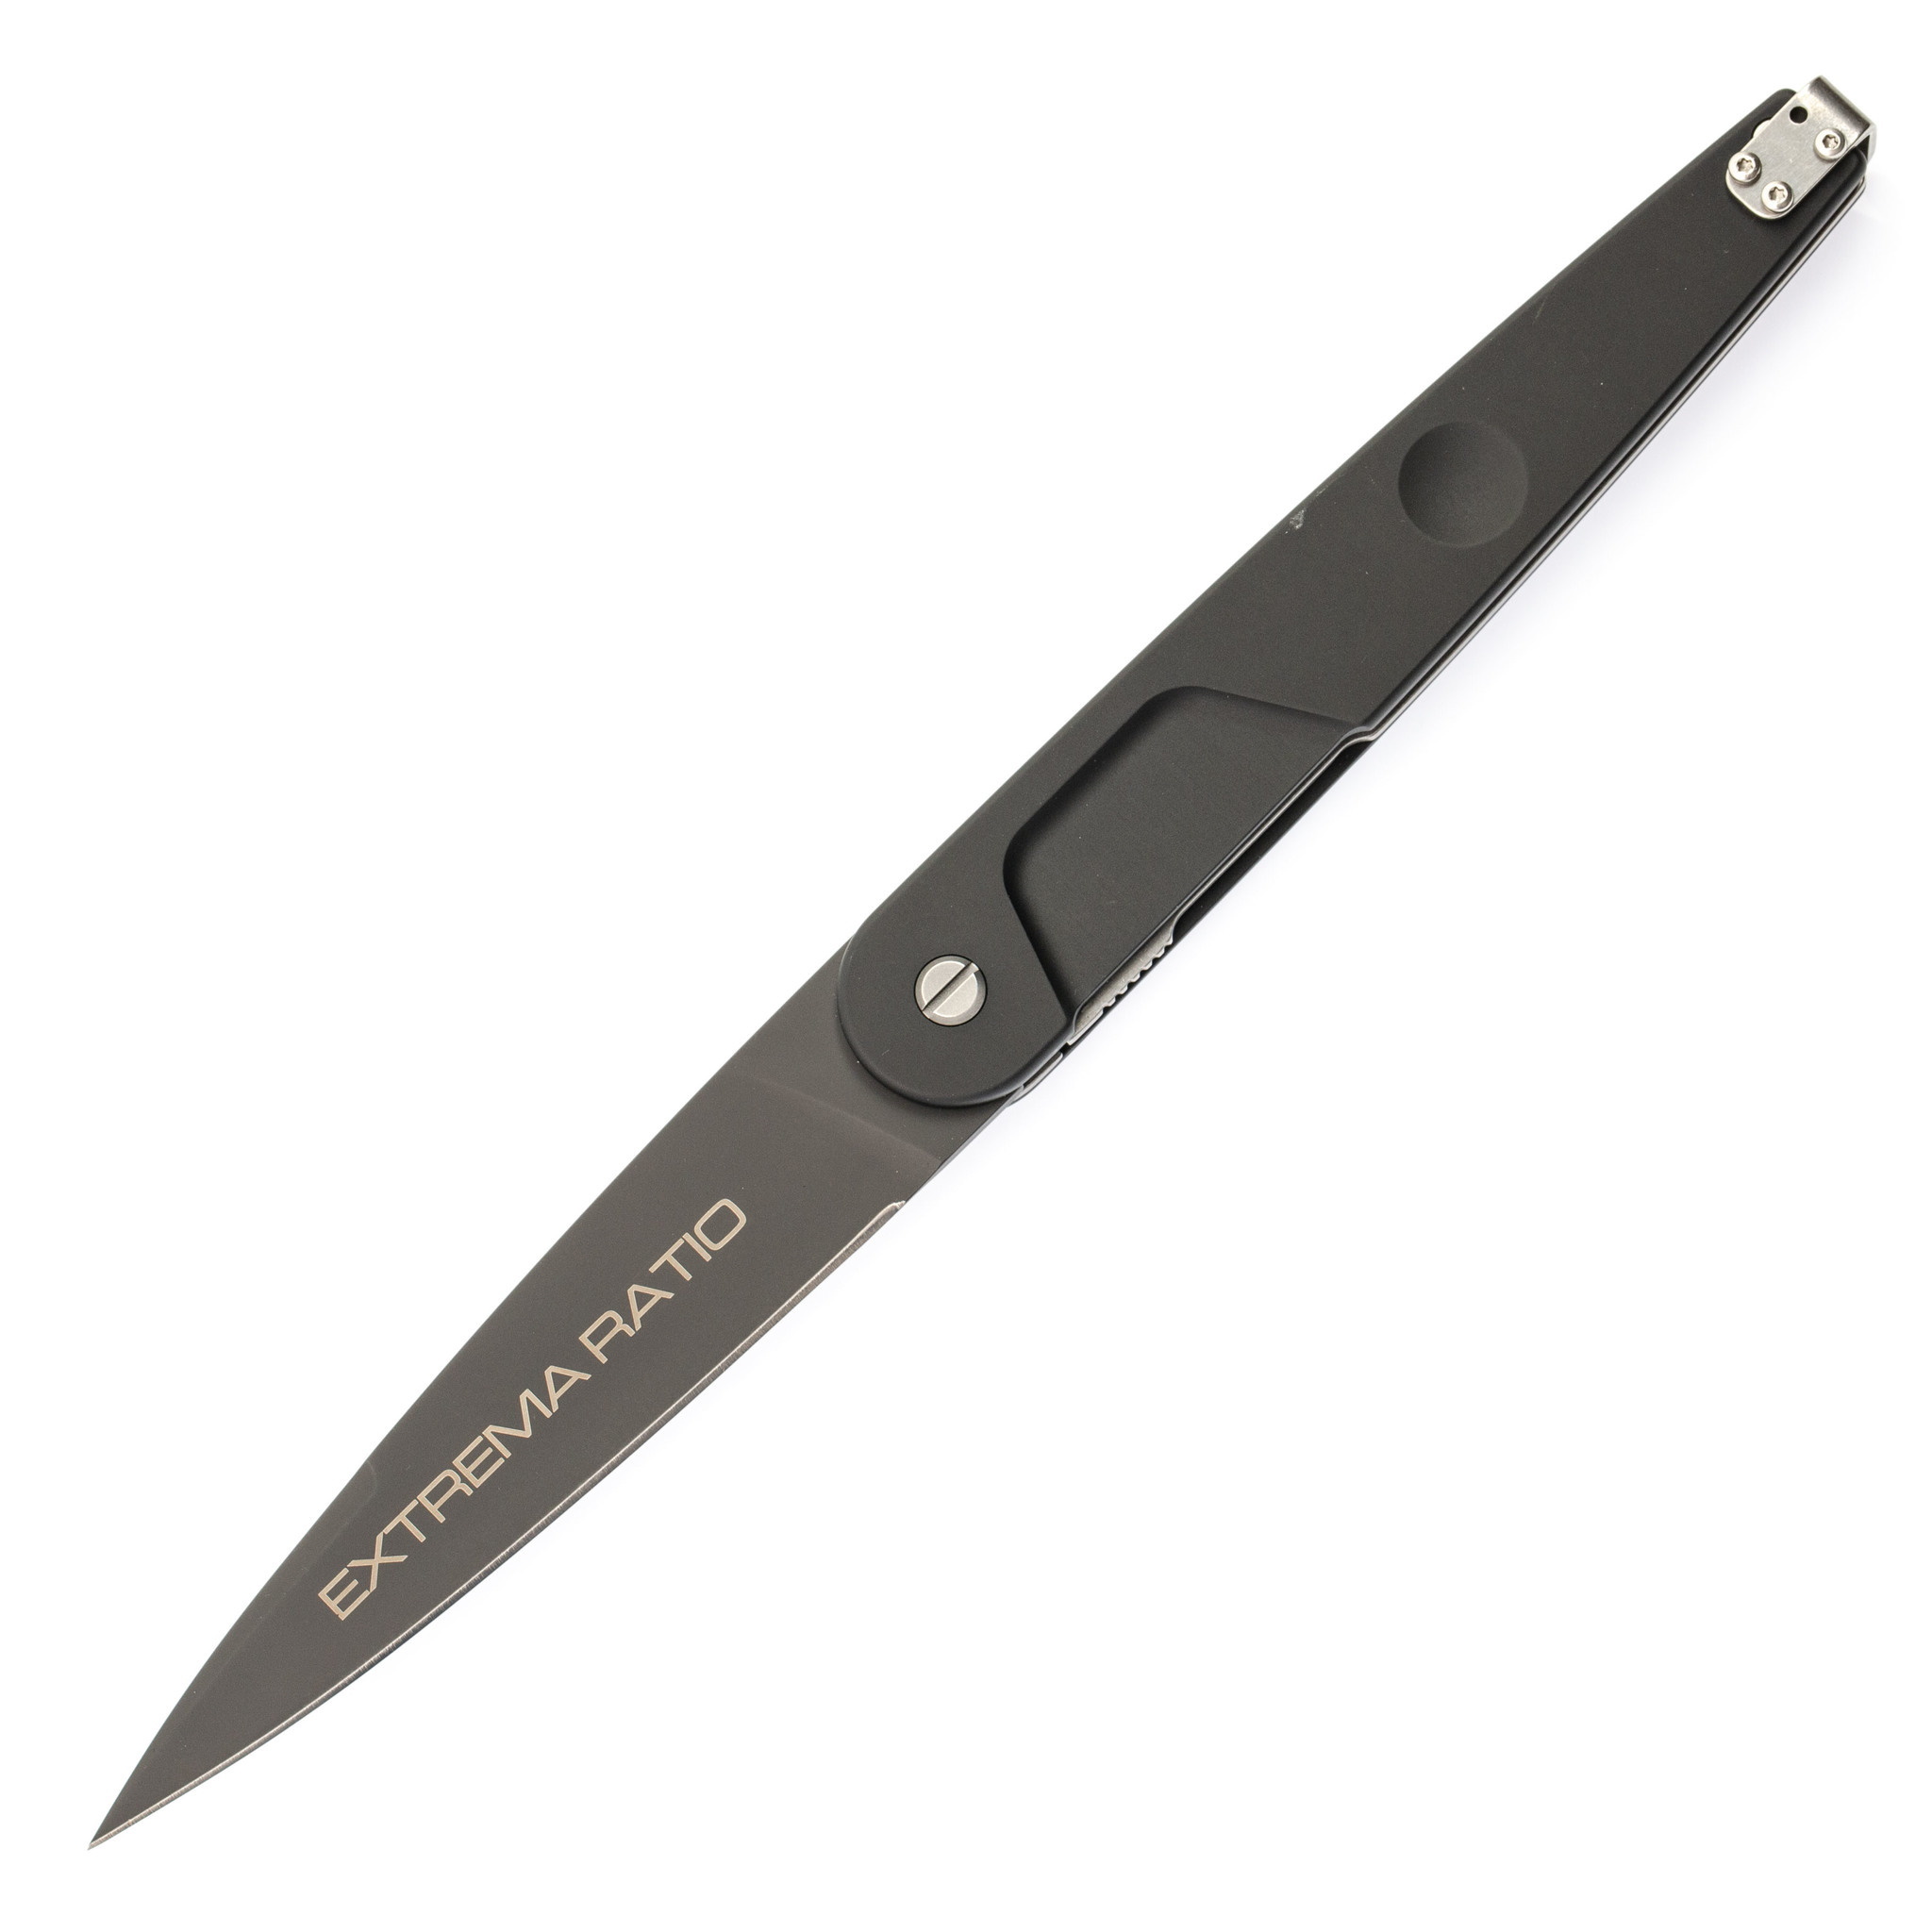 Складной нож Extrema Ratio BD4 R, сталь N690, рукоять черная Anticorodal